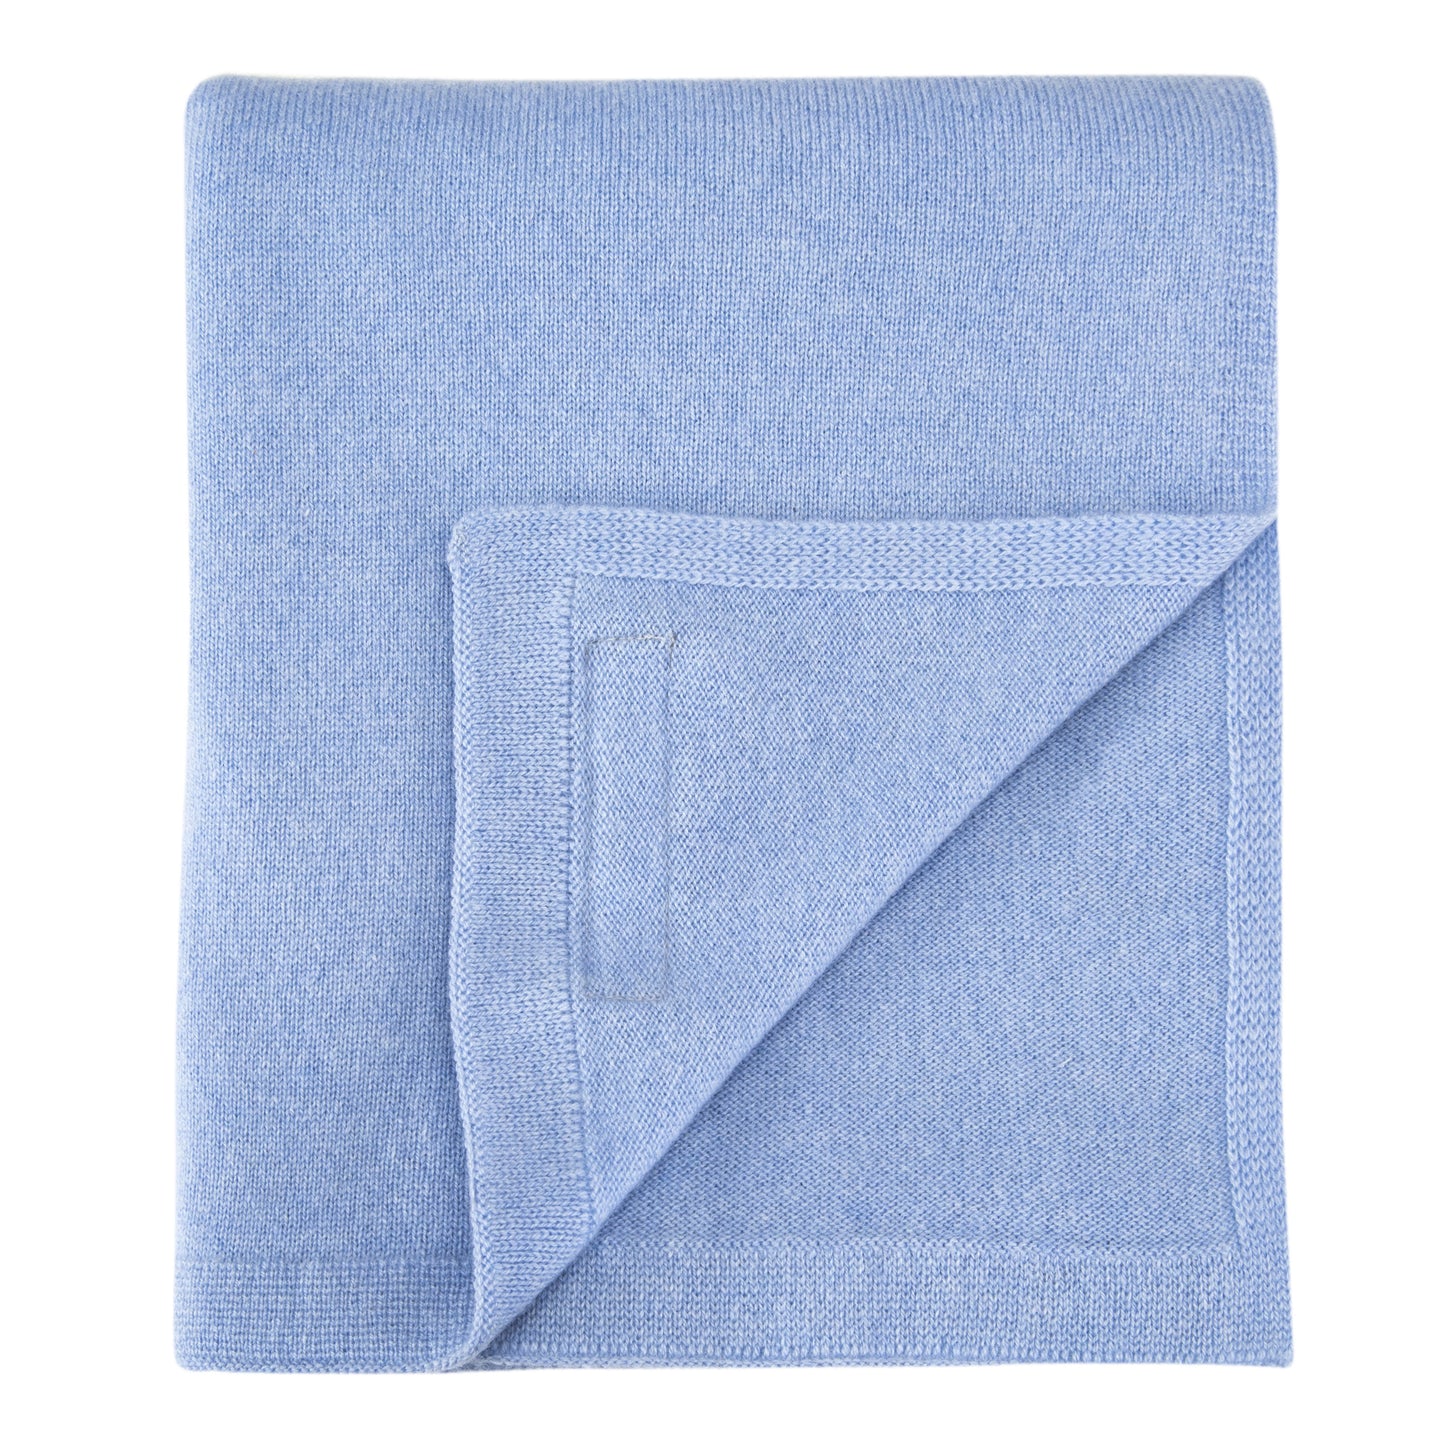 Bespoke Baby Cashmere Blanket in Denim Blue